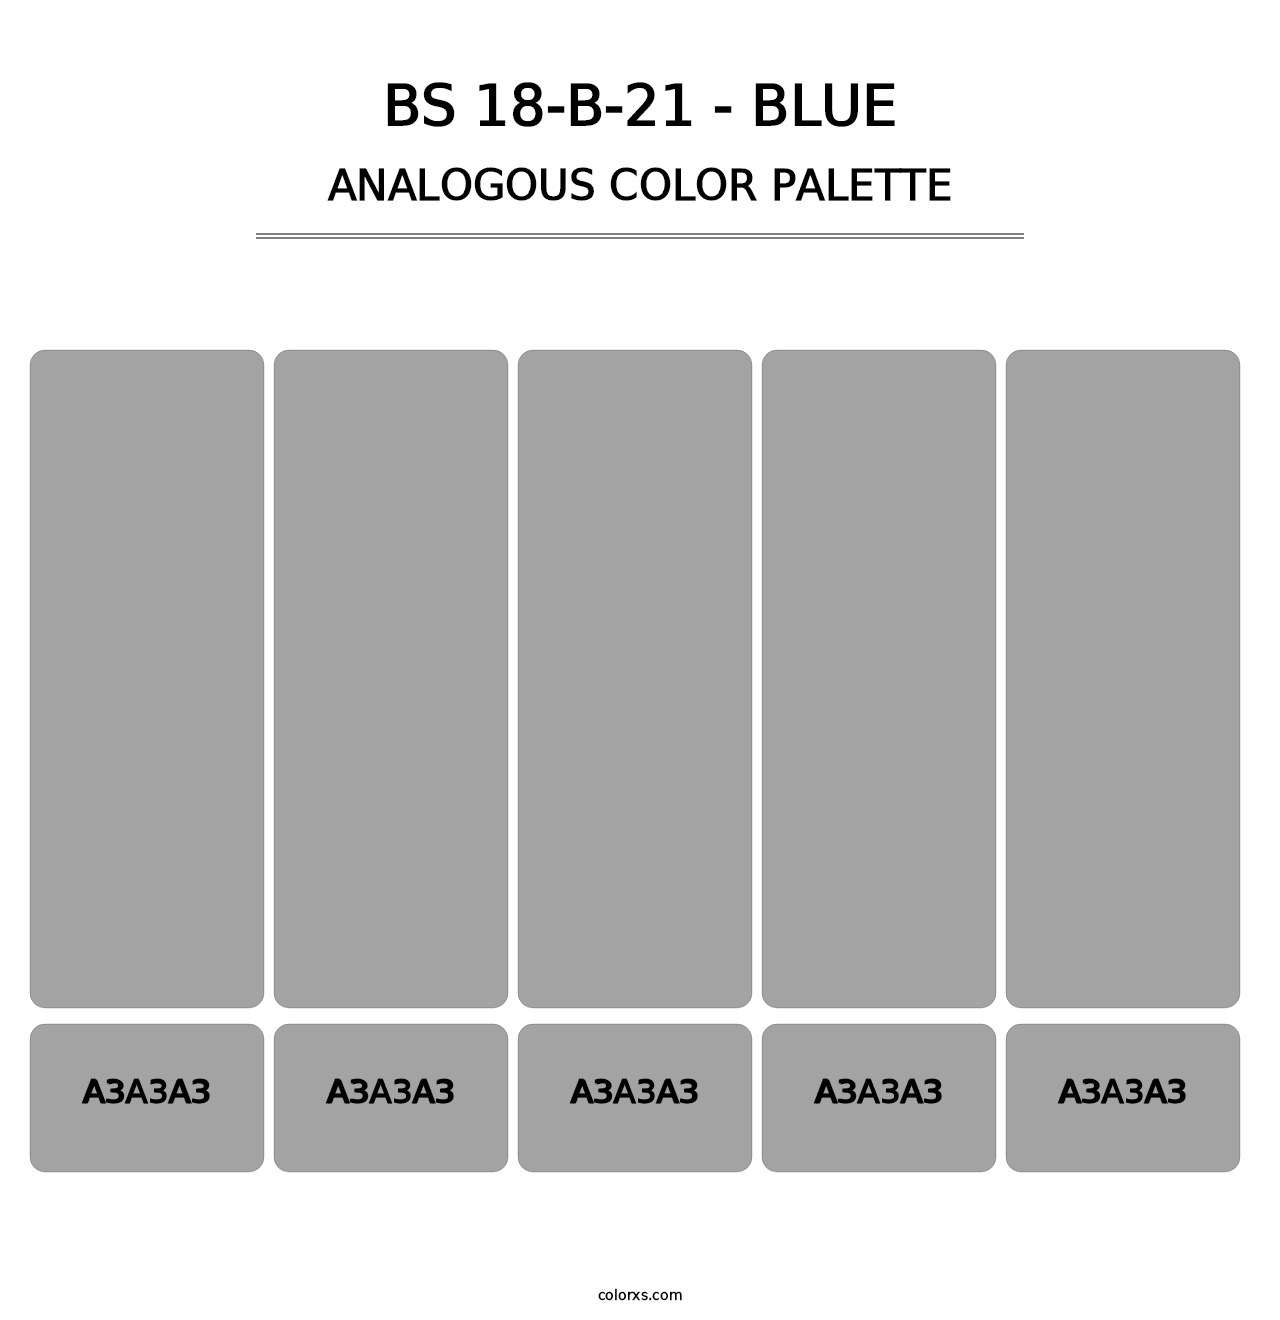 BS 18-B-21 - Blue - Analogous Color Palette